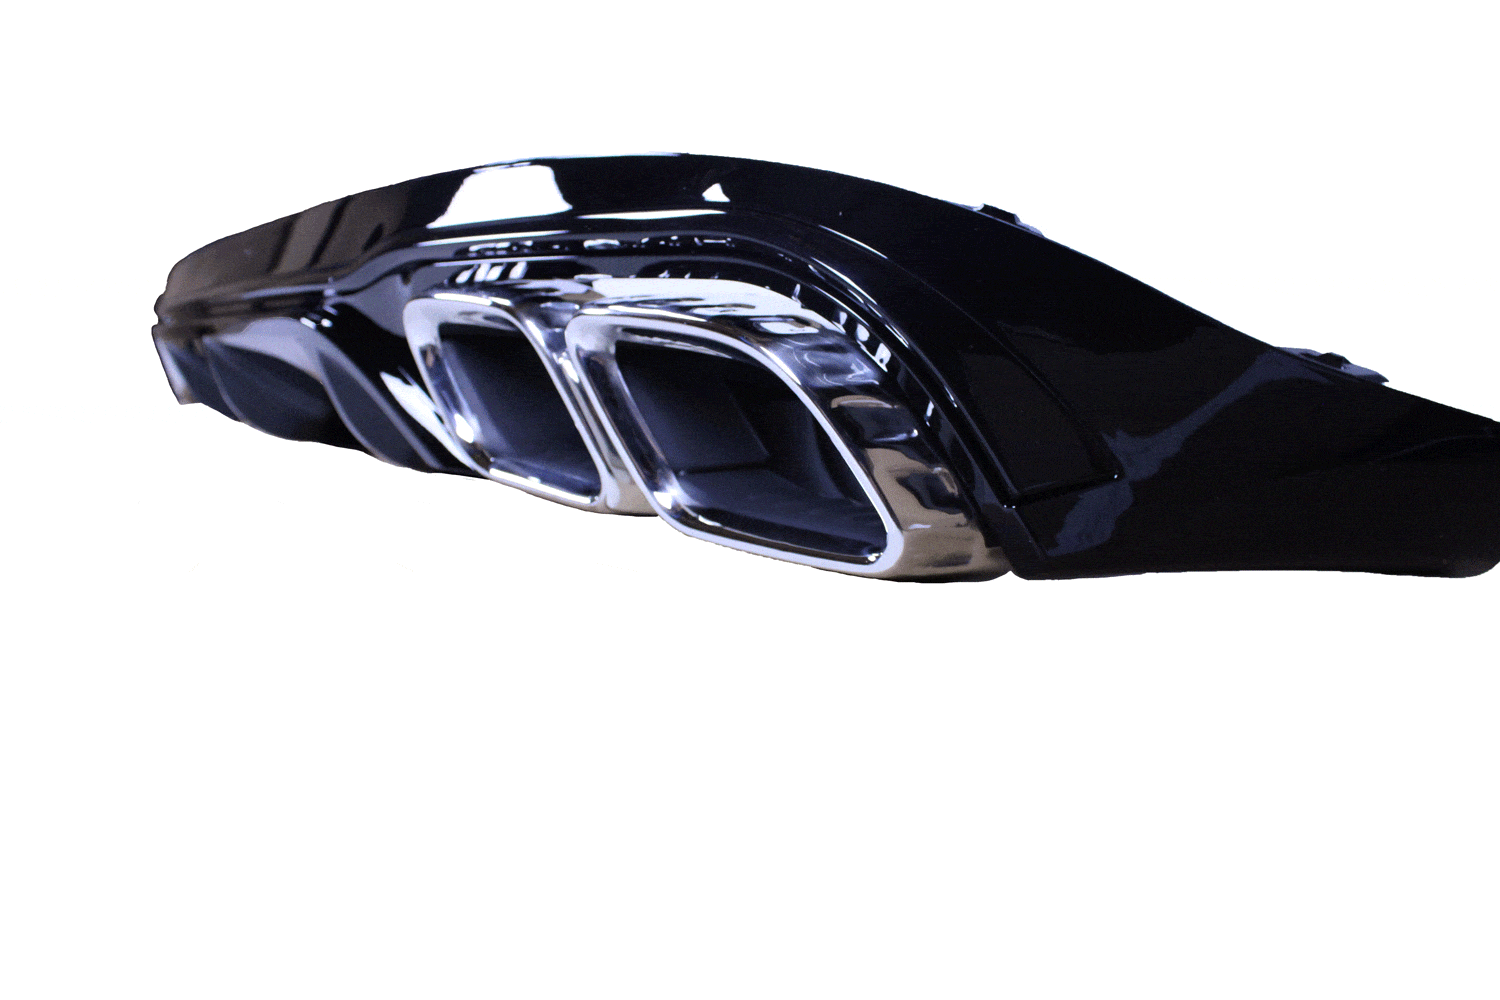 Diffuser Diffuser glanzend zwart compatibel met Mercedes E coupé cabrio C238 A238 chrome uitlaatsierstukken